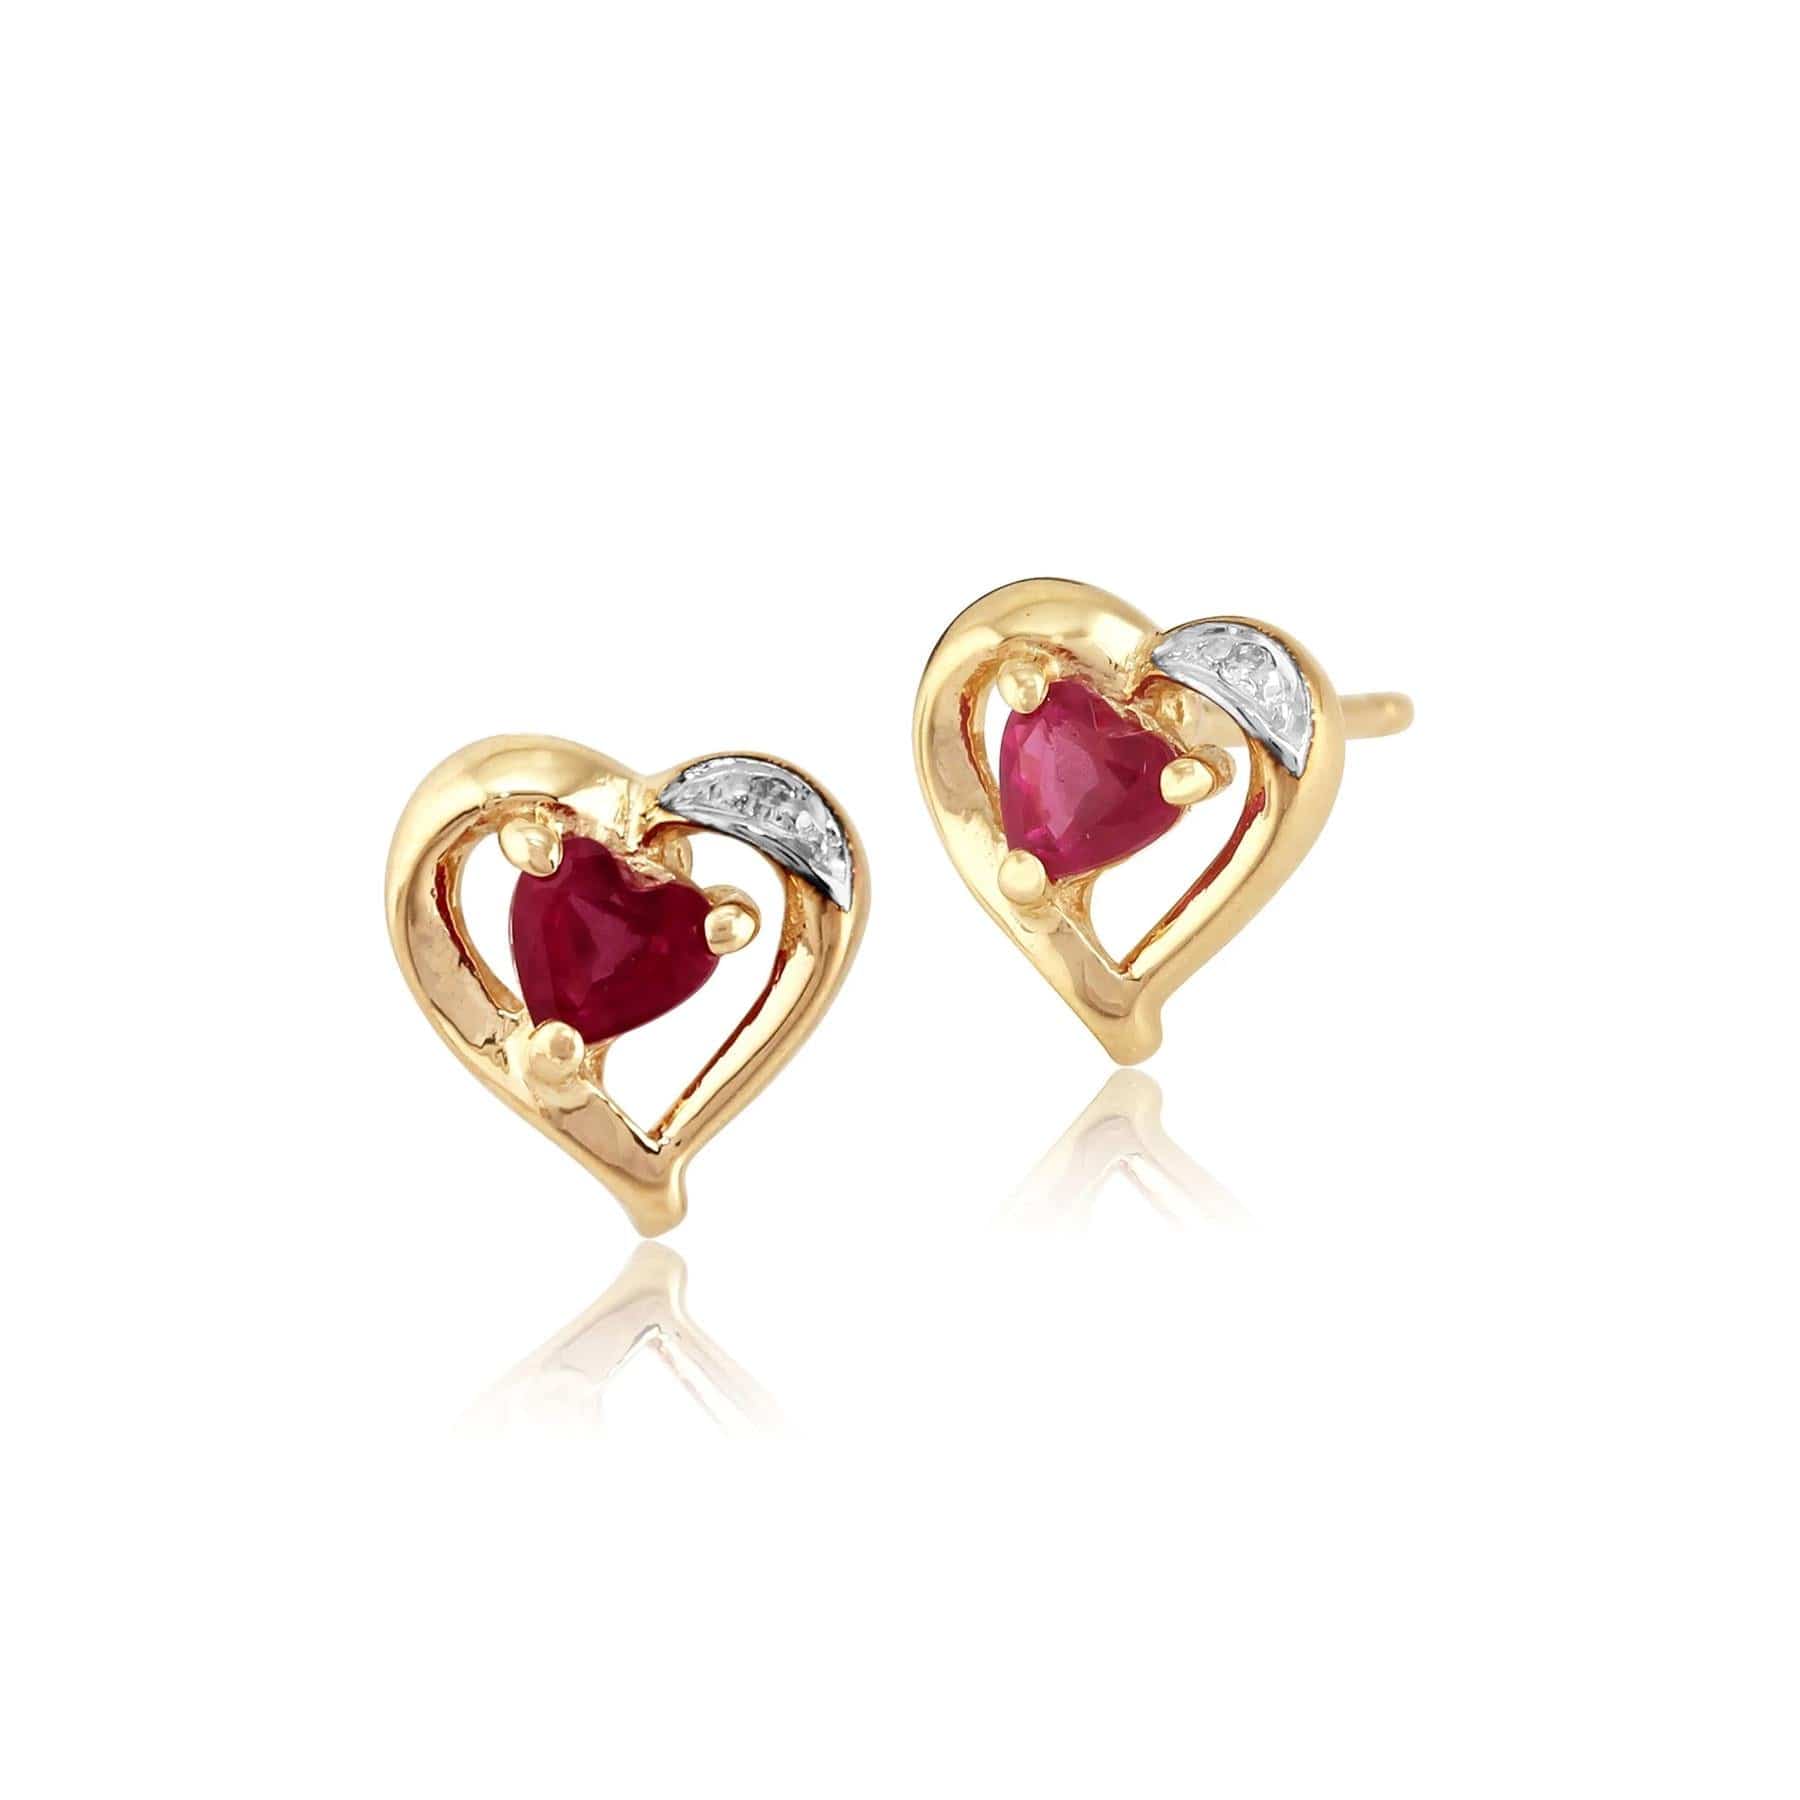 10295-10916 Classic Heart Ruby & Diamond Heart Stud Earrings & Pendant Set in 9ct Gold 4